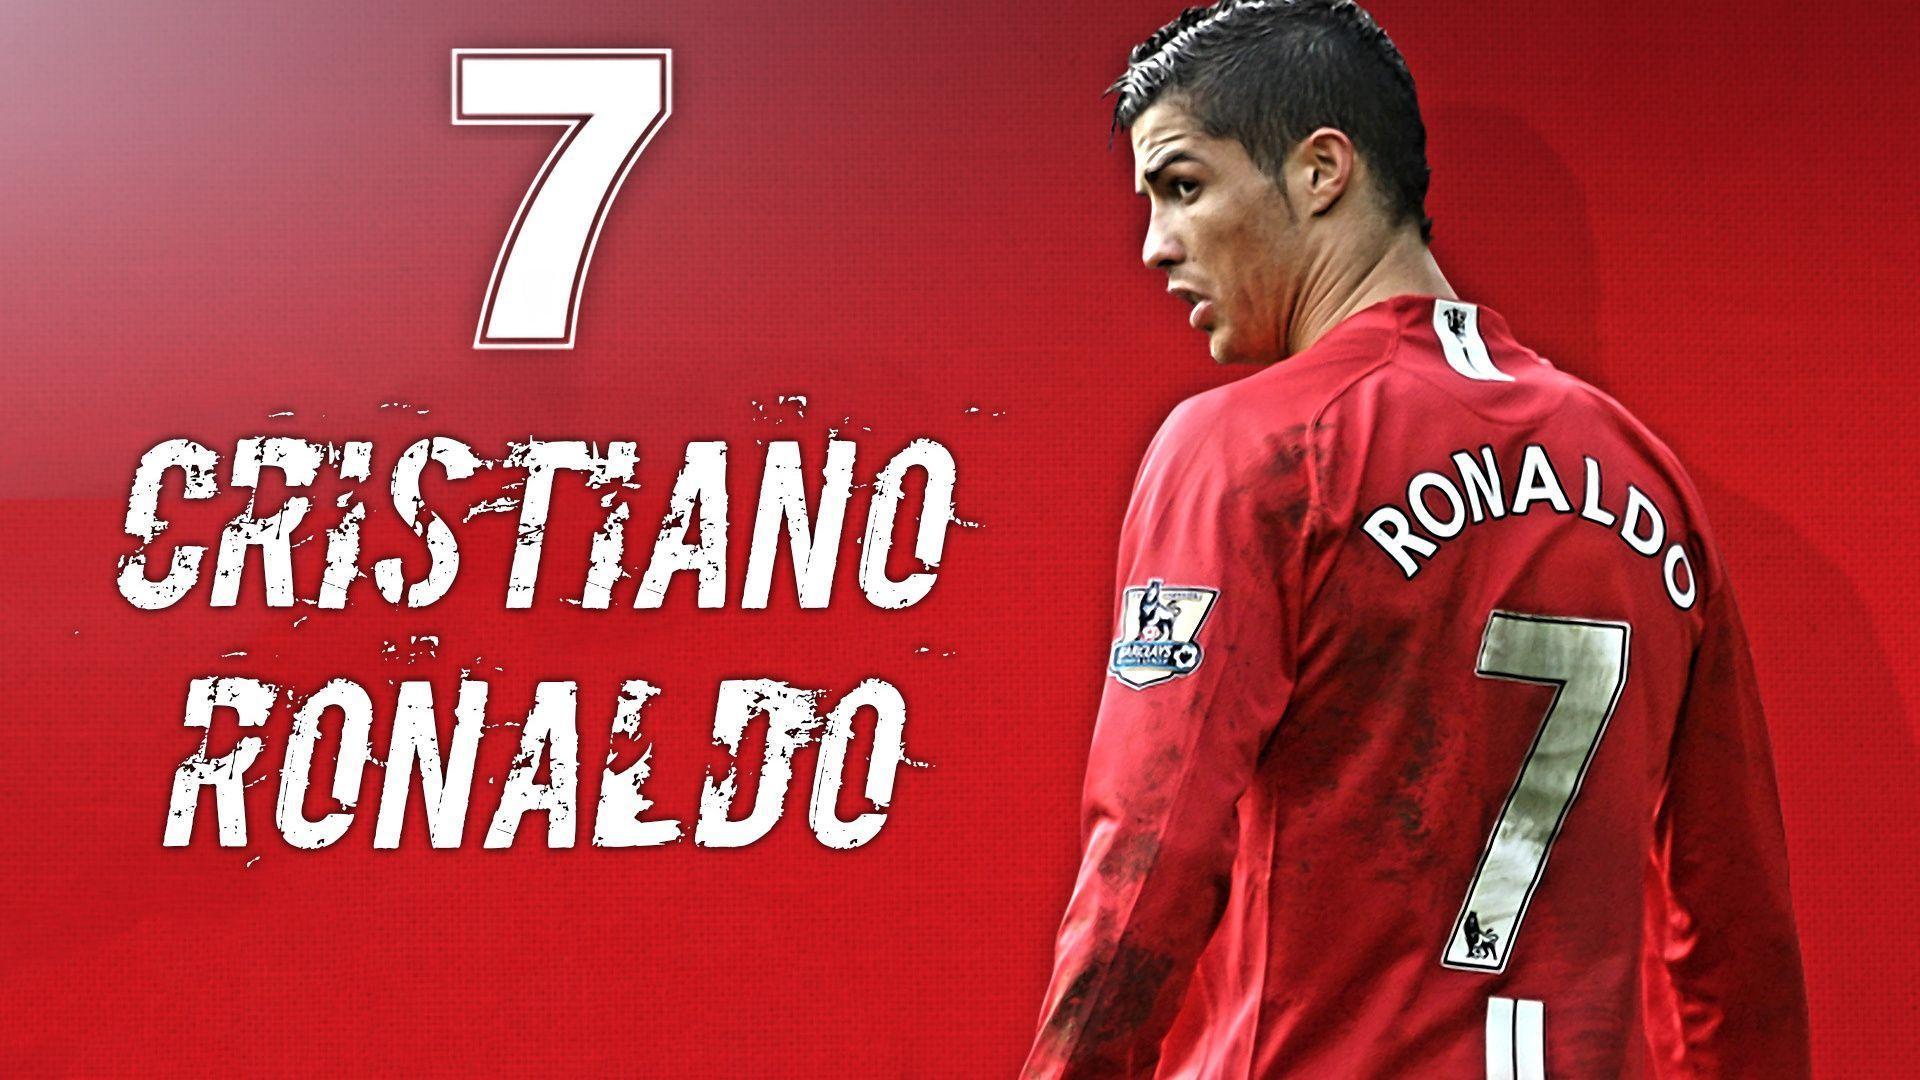 Football, Soccer, Cr Cristiano Ronaldo, Manchester